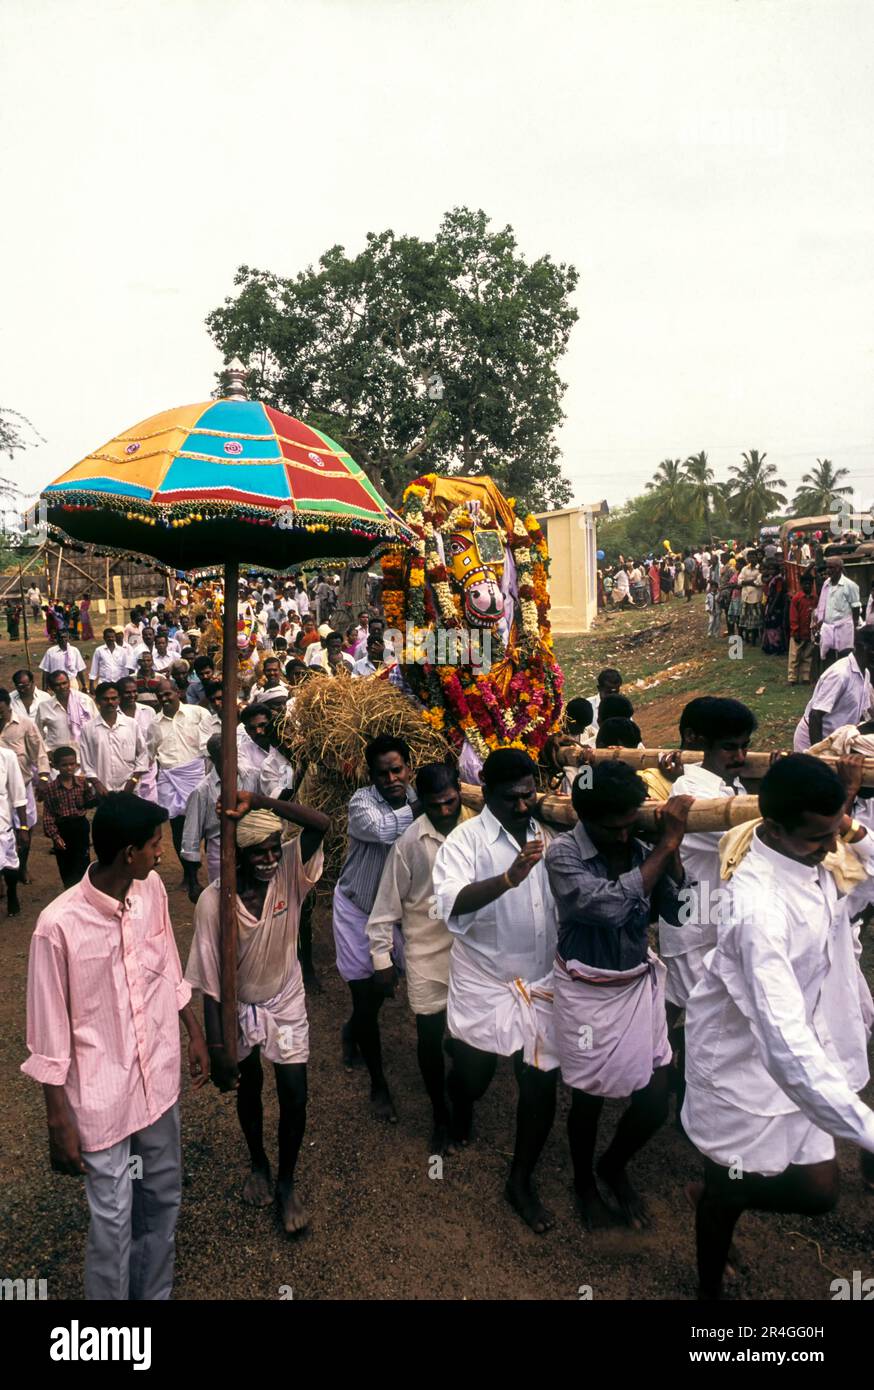 Abitanti del villaggio che trasportano cavallo di terracotta durante il festival Puravi Eduppu, Tamil Nadu, India, Asia Foto Stock